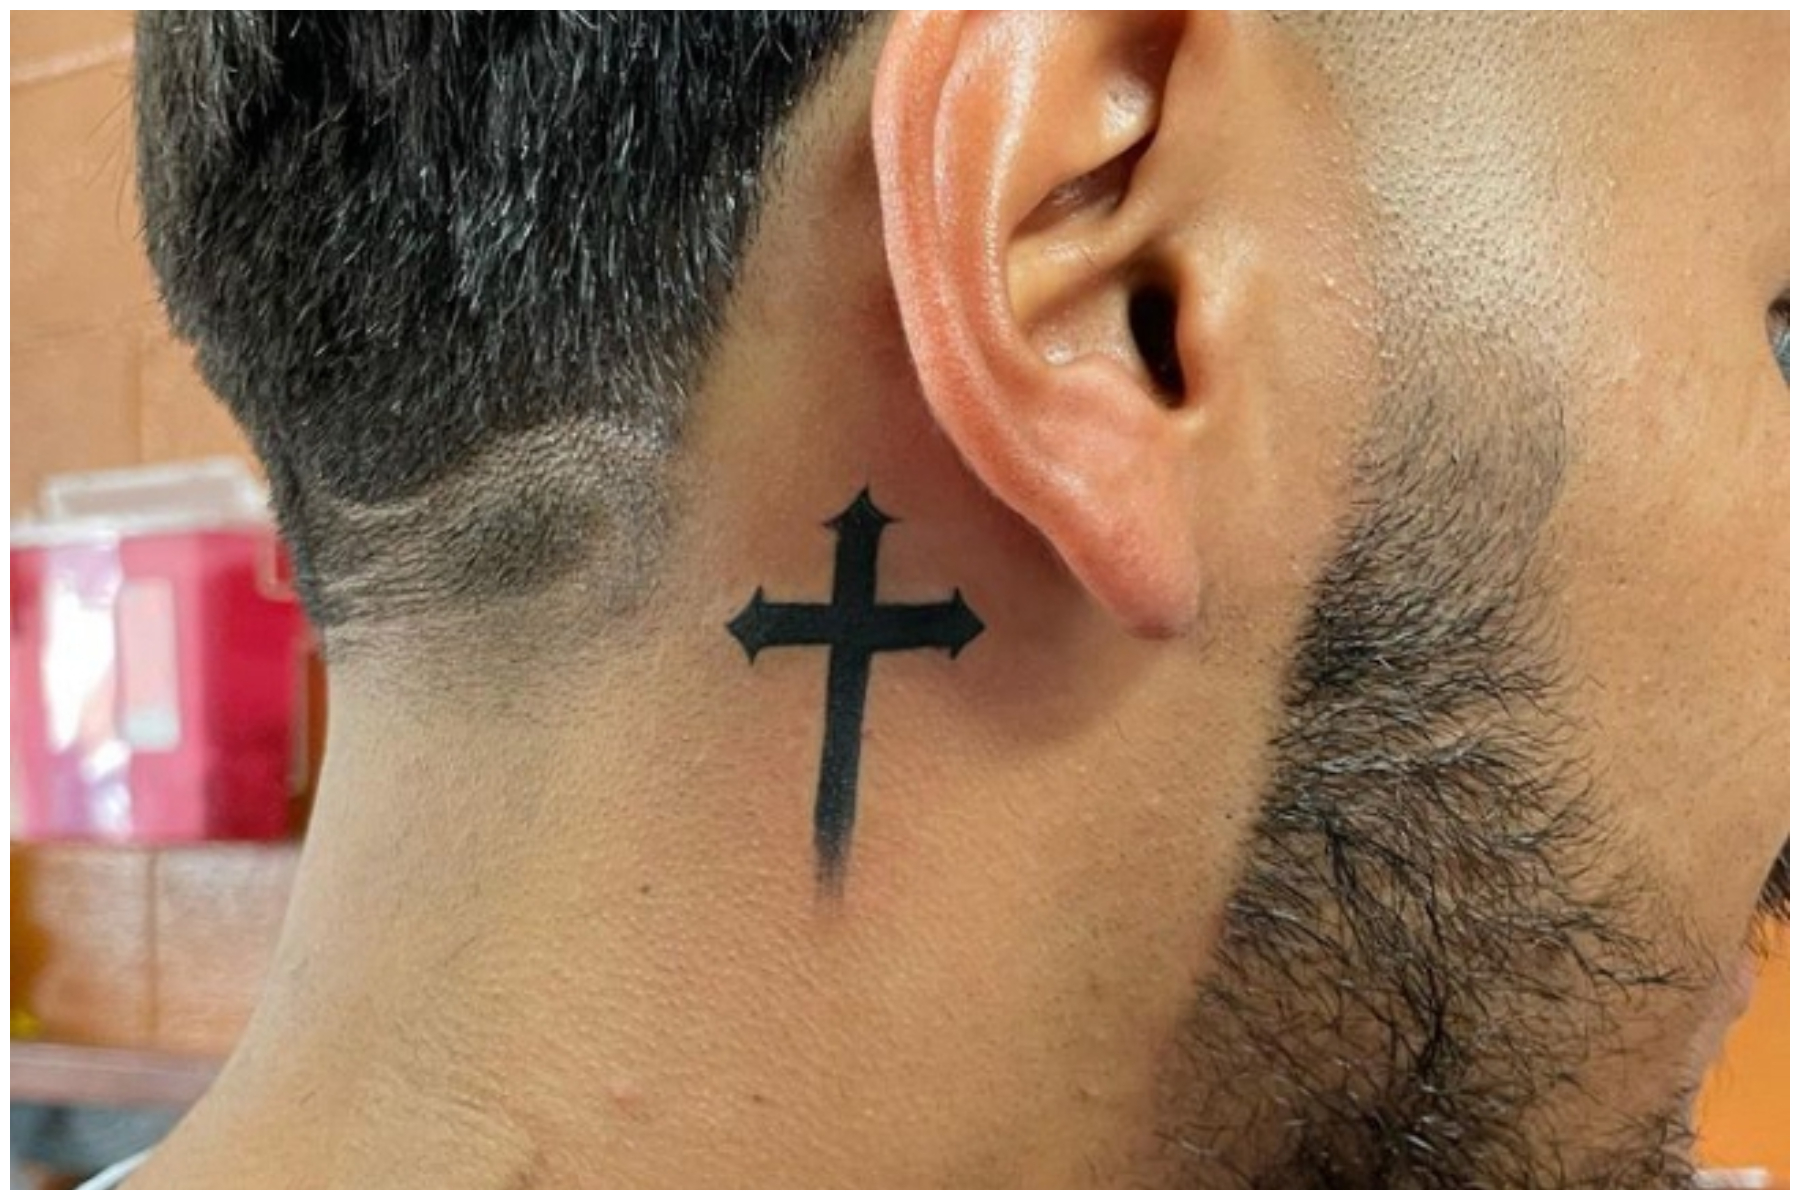 Sinner Ink - That neck shot #sinnerinkbyzip #tattoo... | Facebook